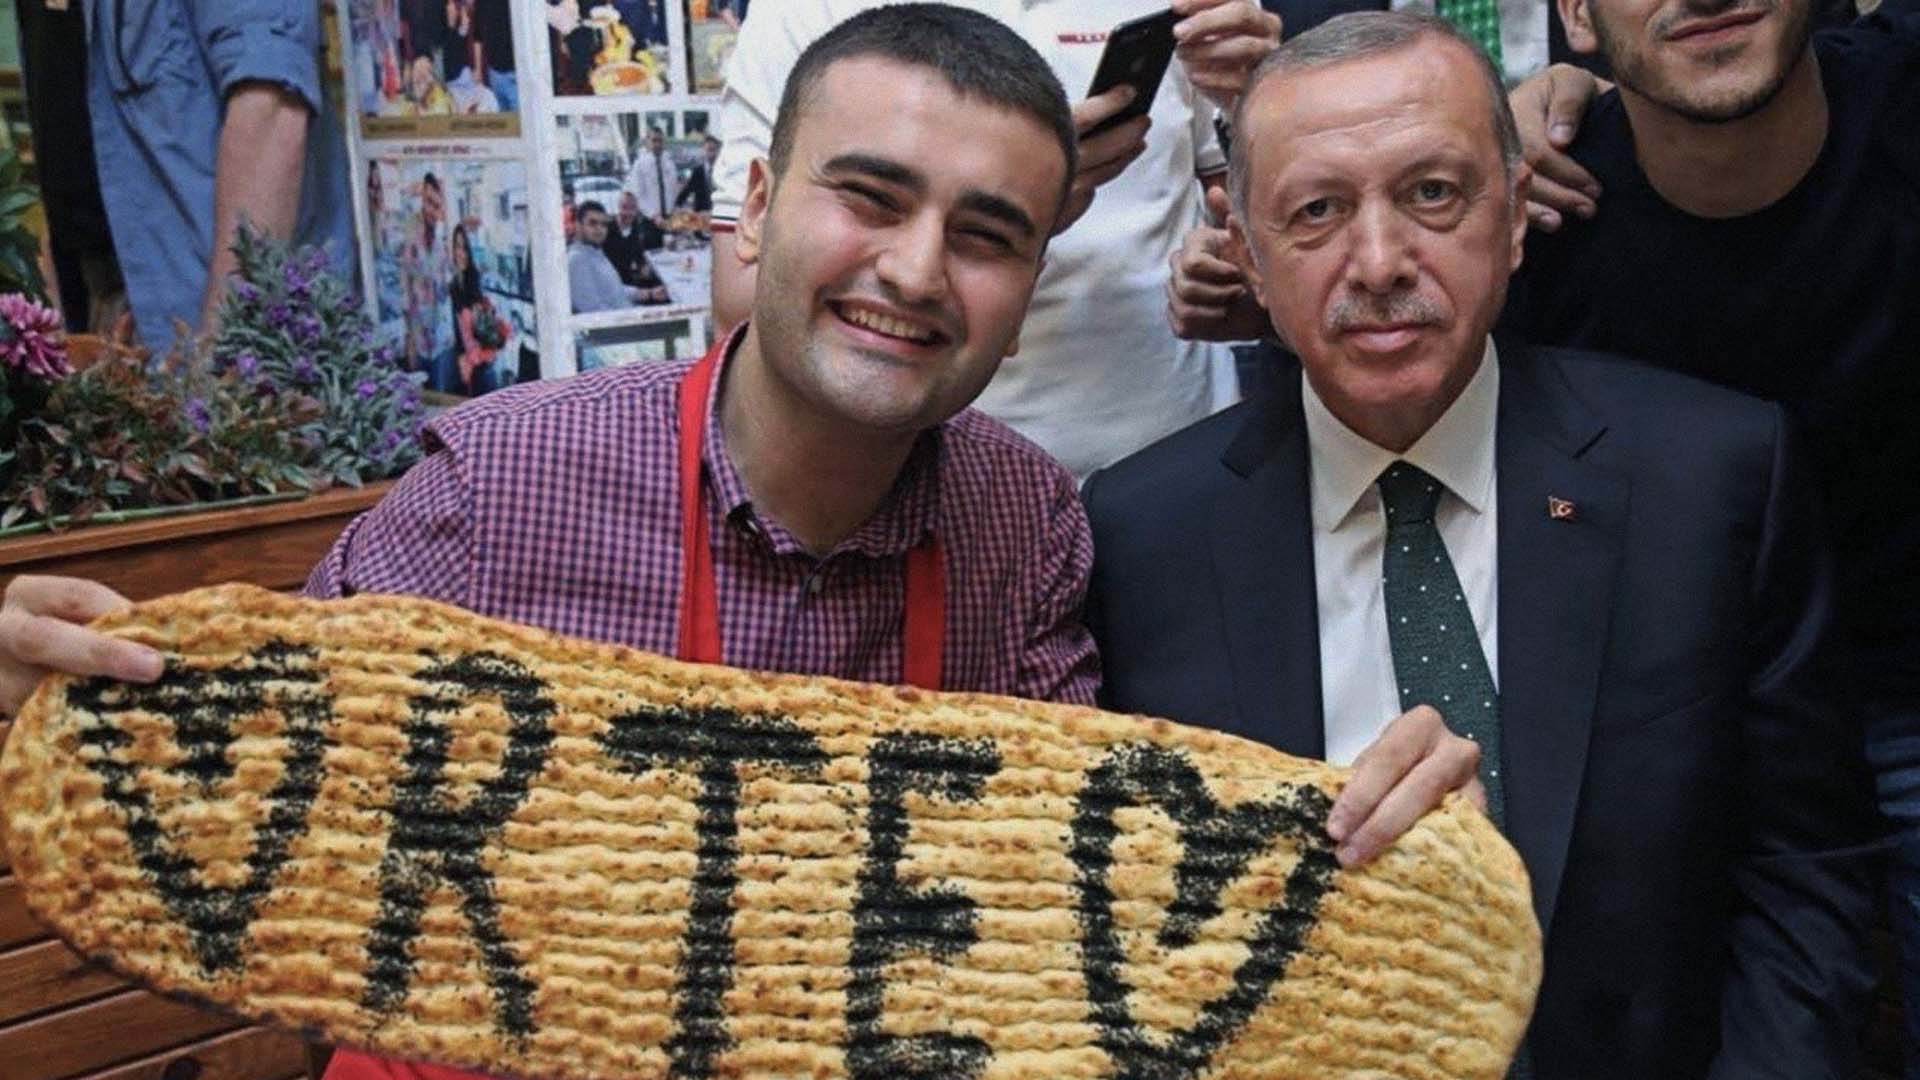 صورة إردوغان يعين الشيف بوراك ممثلاً للقيم التركية لاكتفائه بالابتسام وصنع الكباب